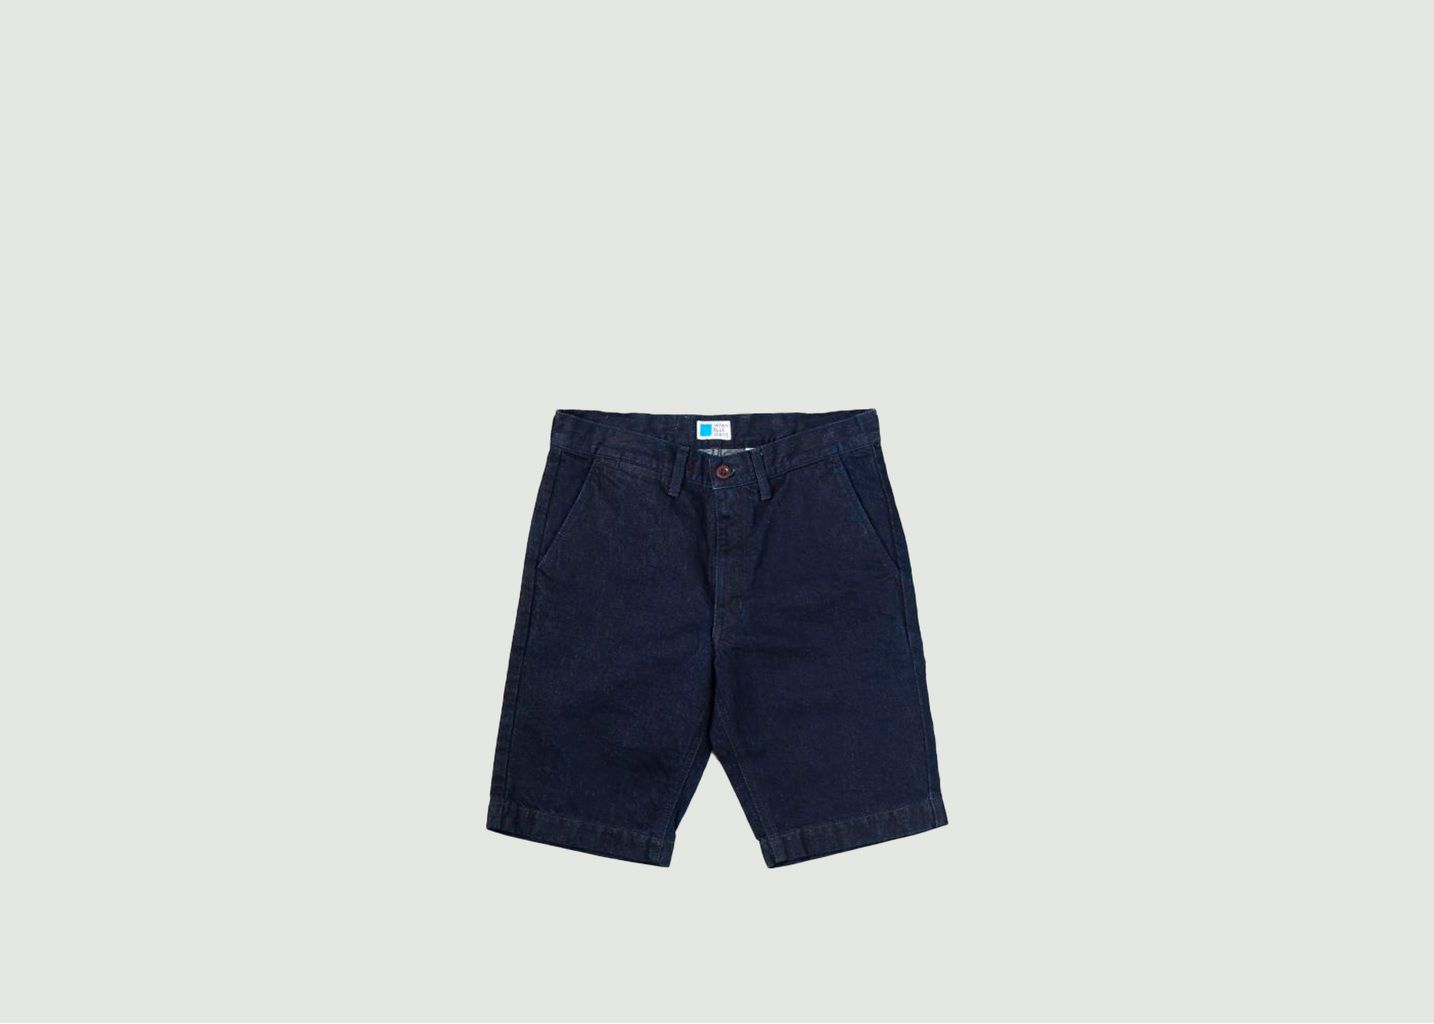 Washi denim shorts - Japan Blue Jeans